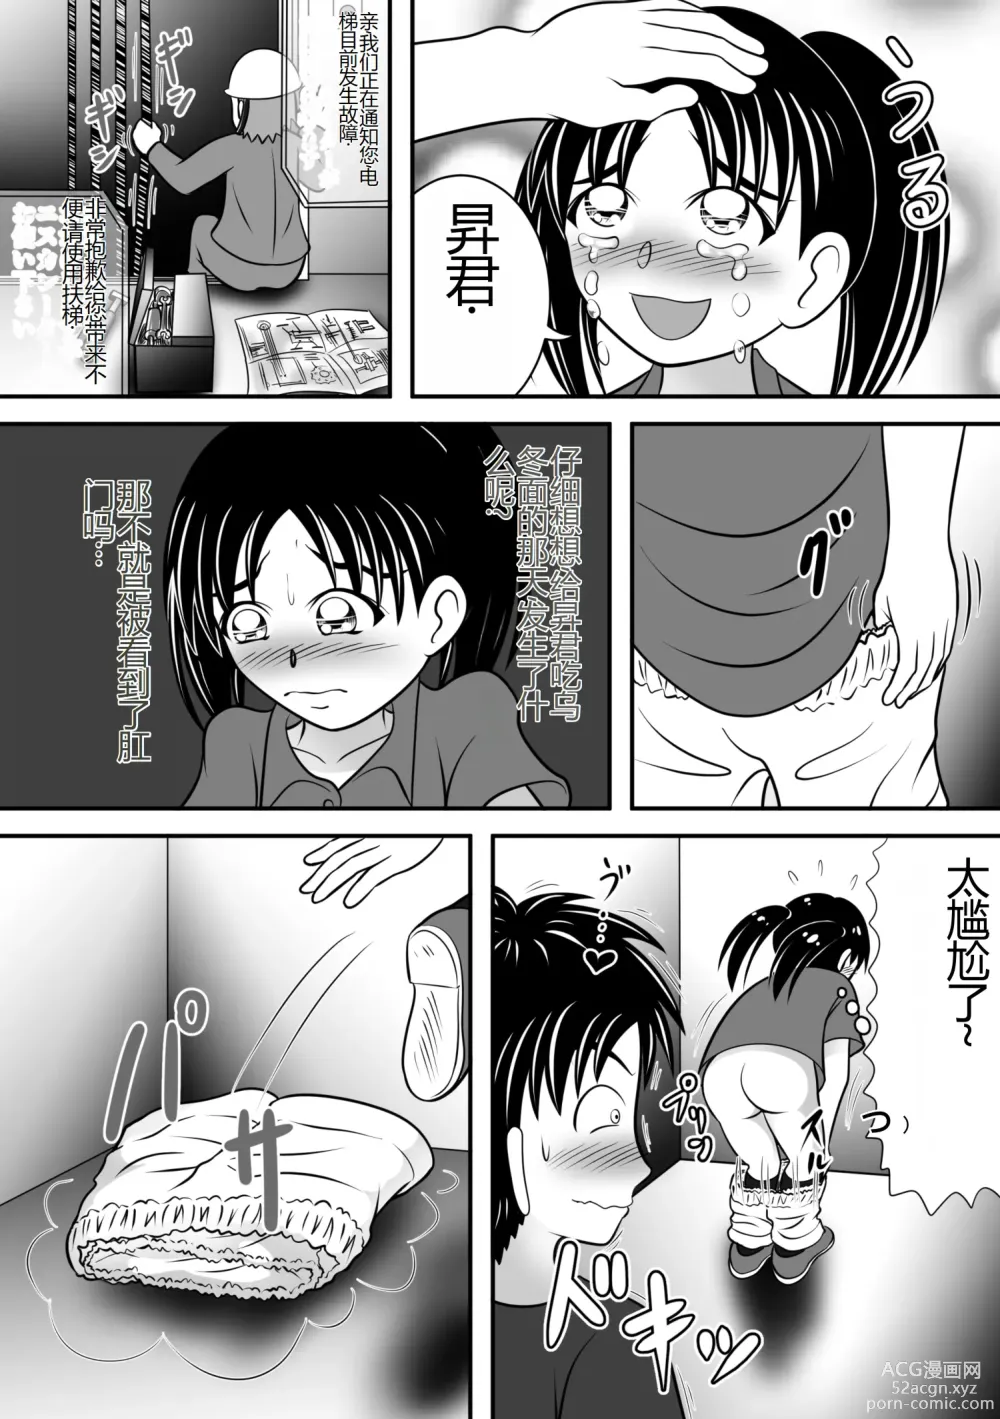 Page 7 of doujinshi Atsuatsu Elevator